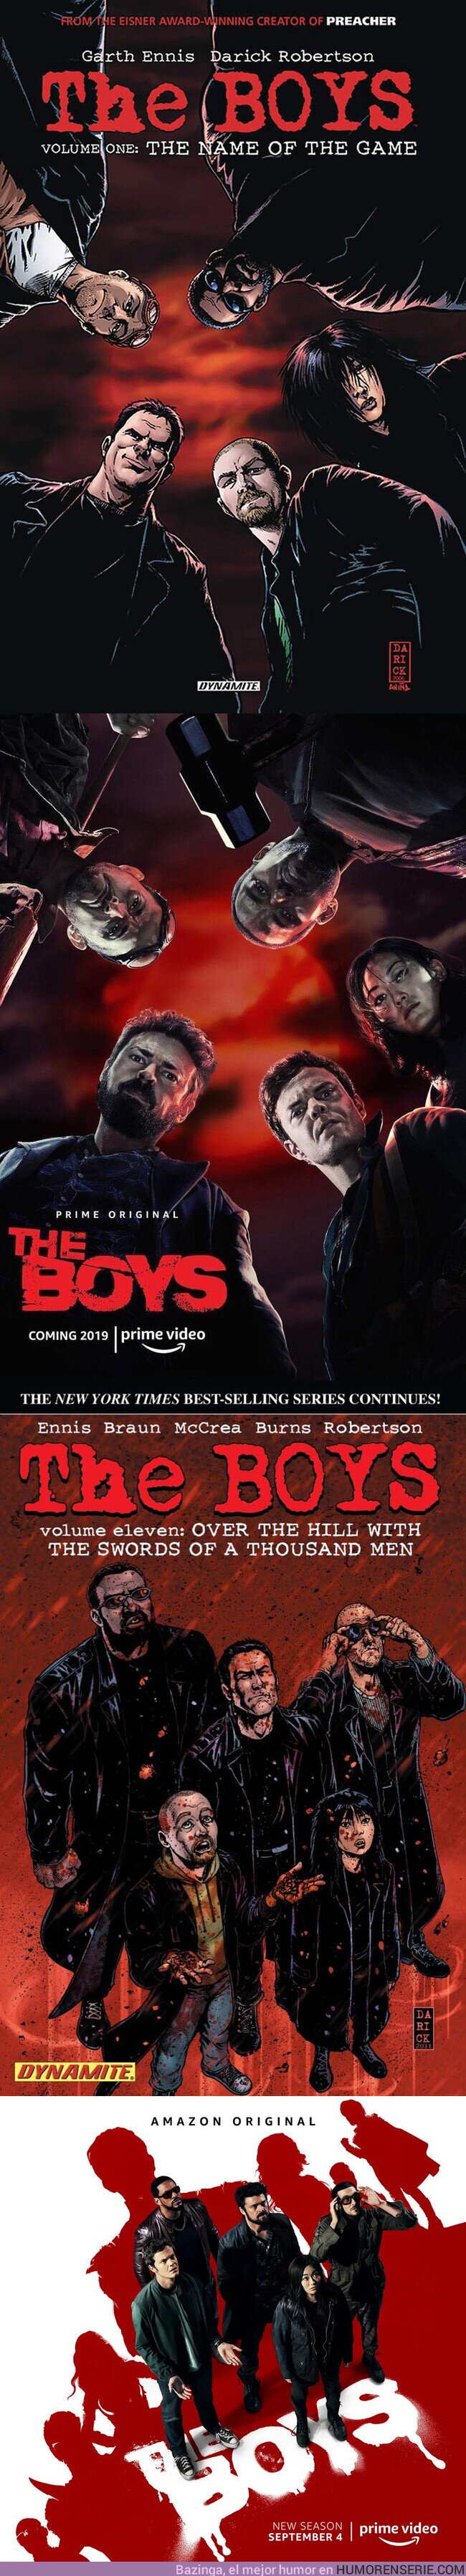 55886 - Amo que los posters de la serie de The Boys sean recreaciones de las tapas de sus cómic